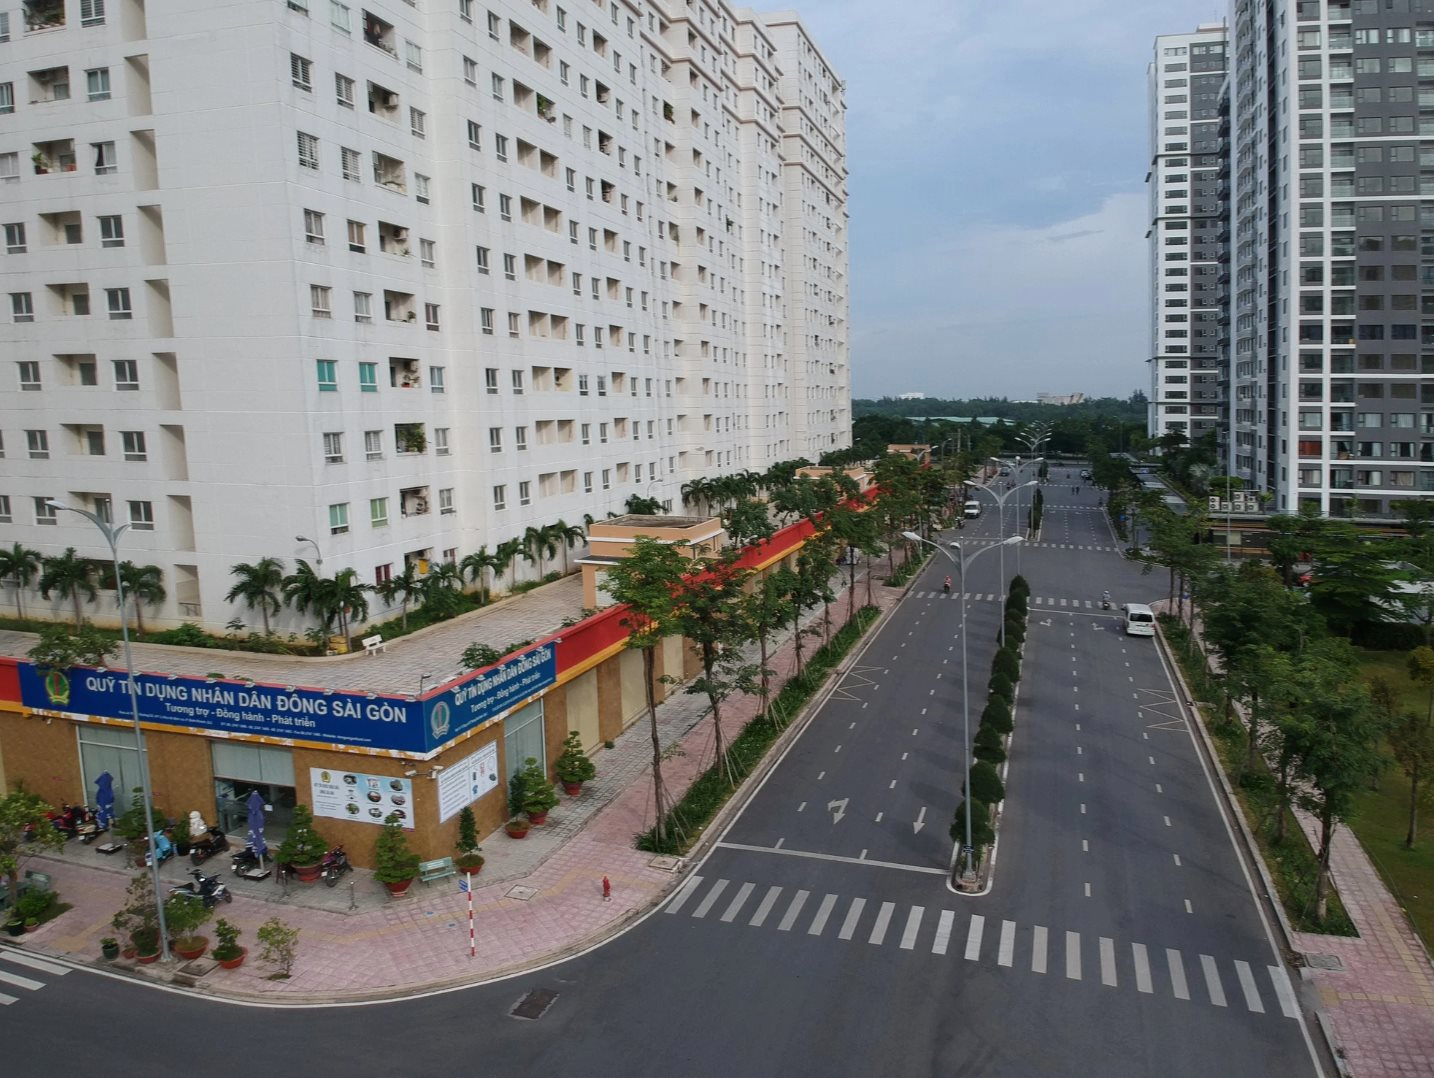 
Tp.HCM sắp đấu giá 3.790 căn hộ tái định cư ở Thủ Thiêm
